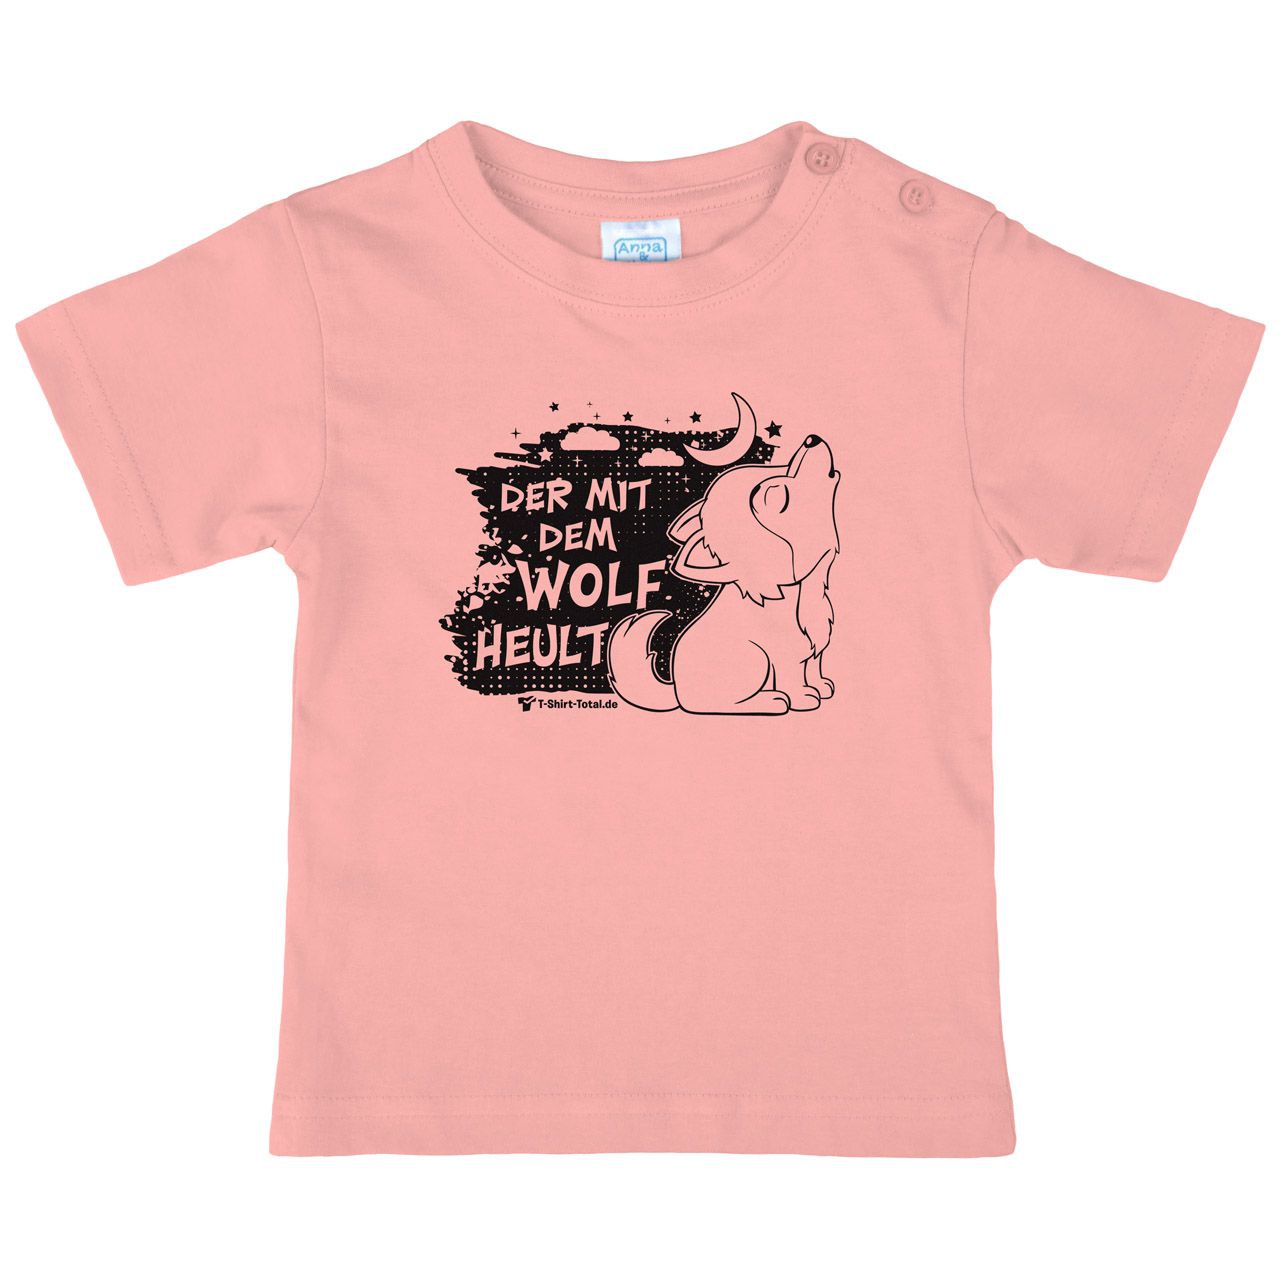 Der mit dem Wolf Kinder T-Shirt rosa 80 / 86